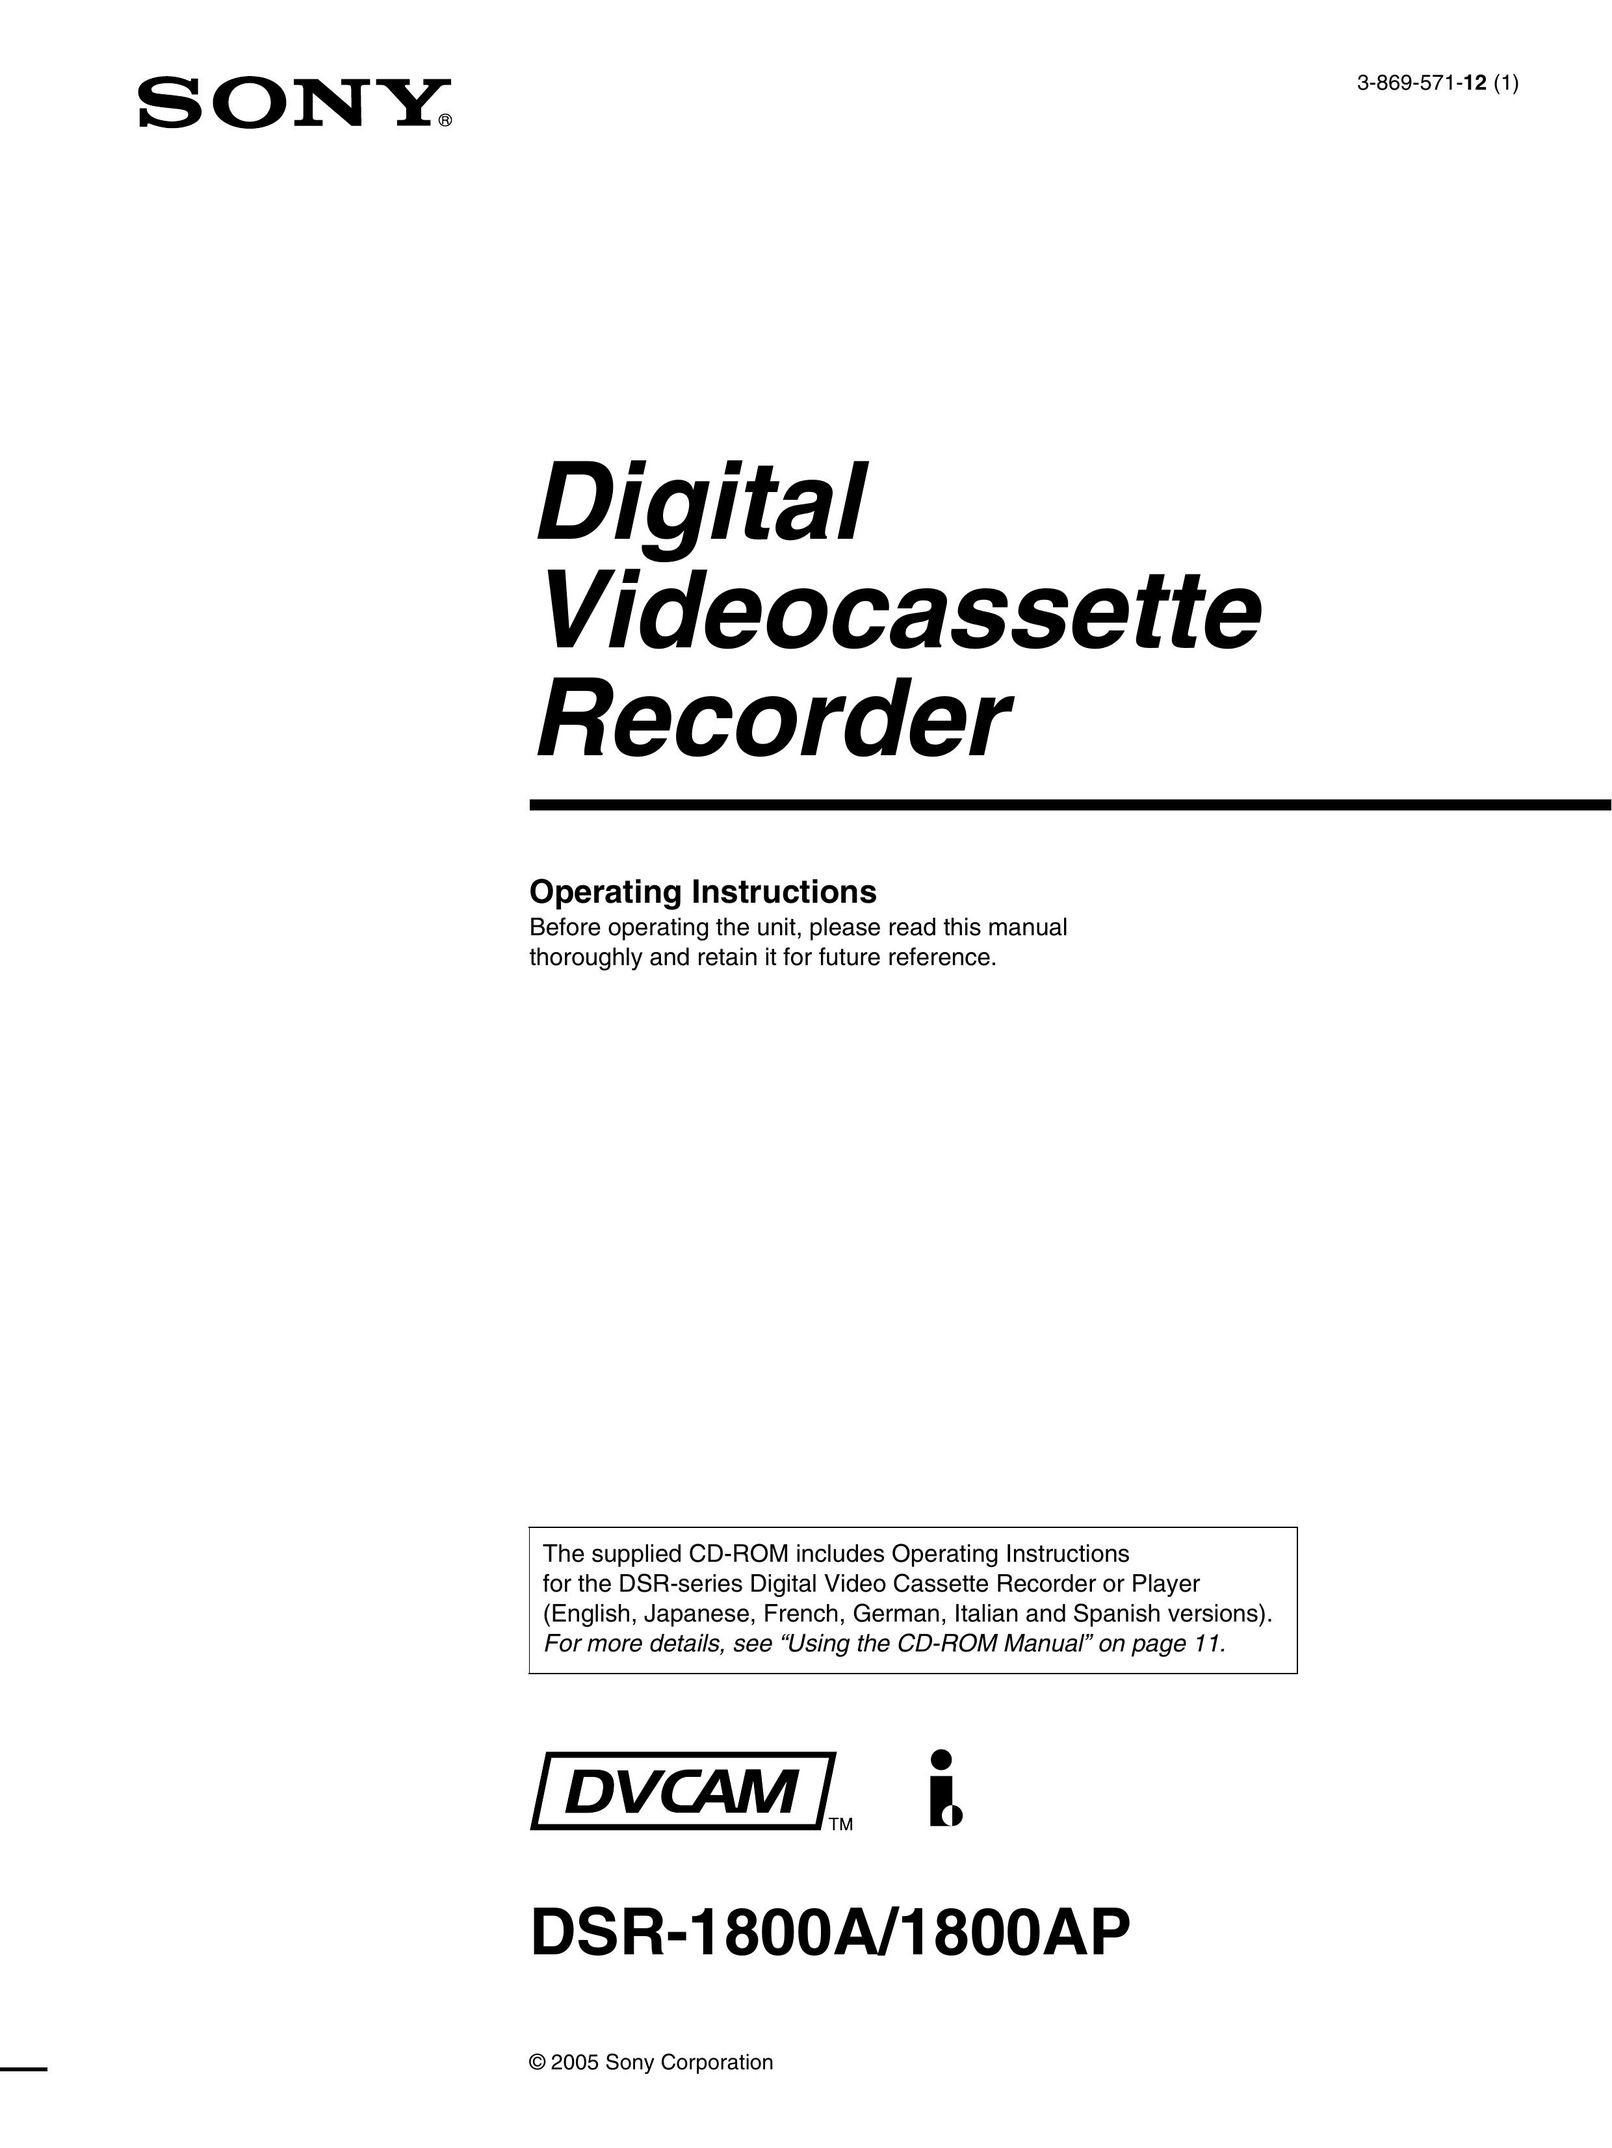 Sony DSR-1800AP DVR User Manual